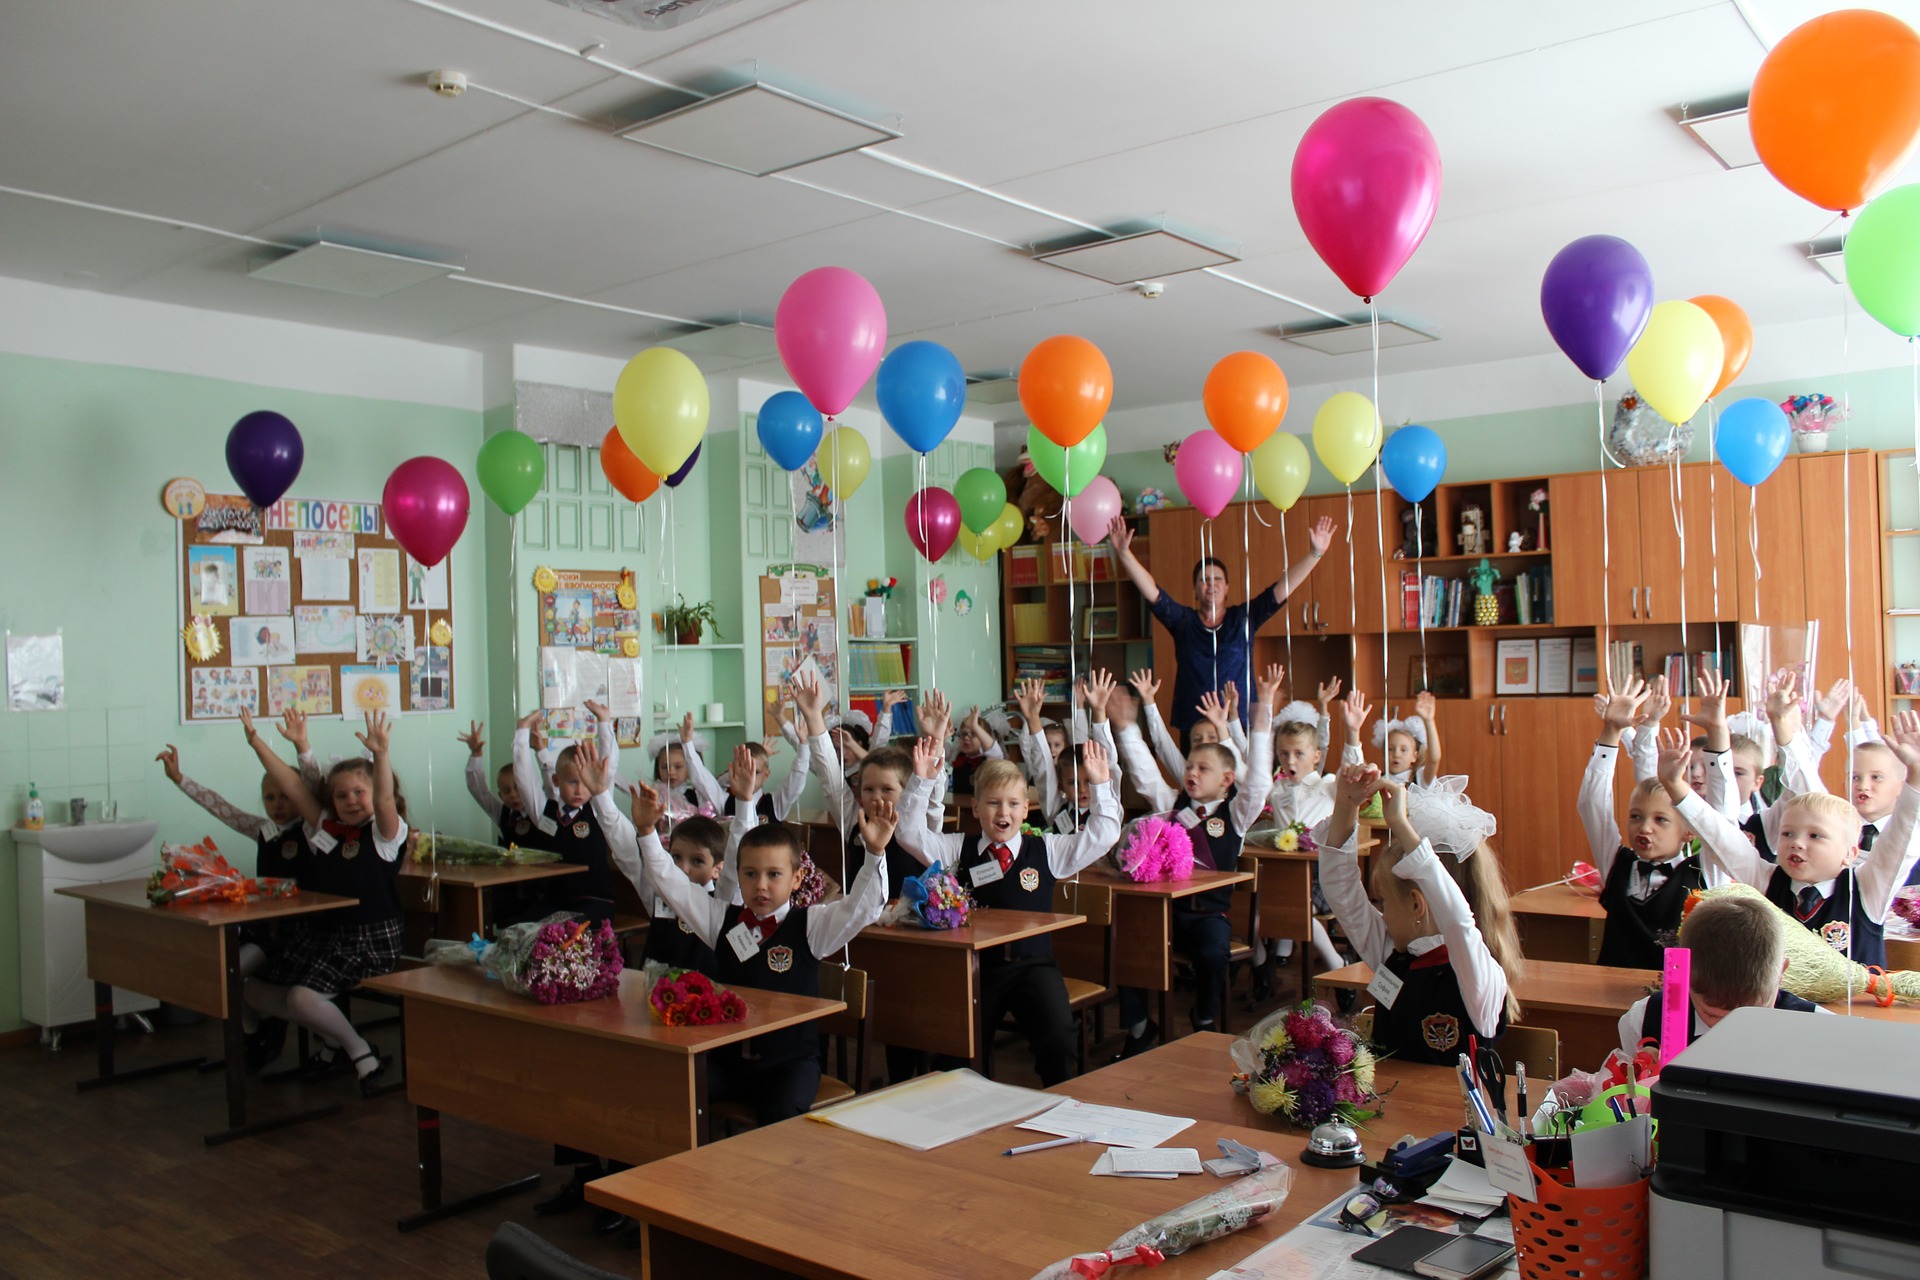 Hodnotenie najlepších škôl v Čeľabinsku v roku 2020